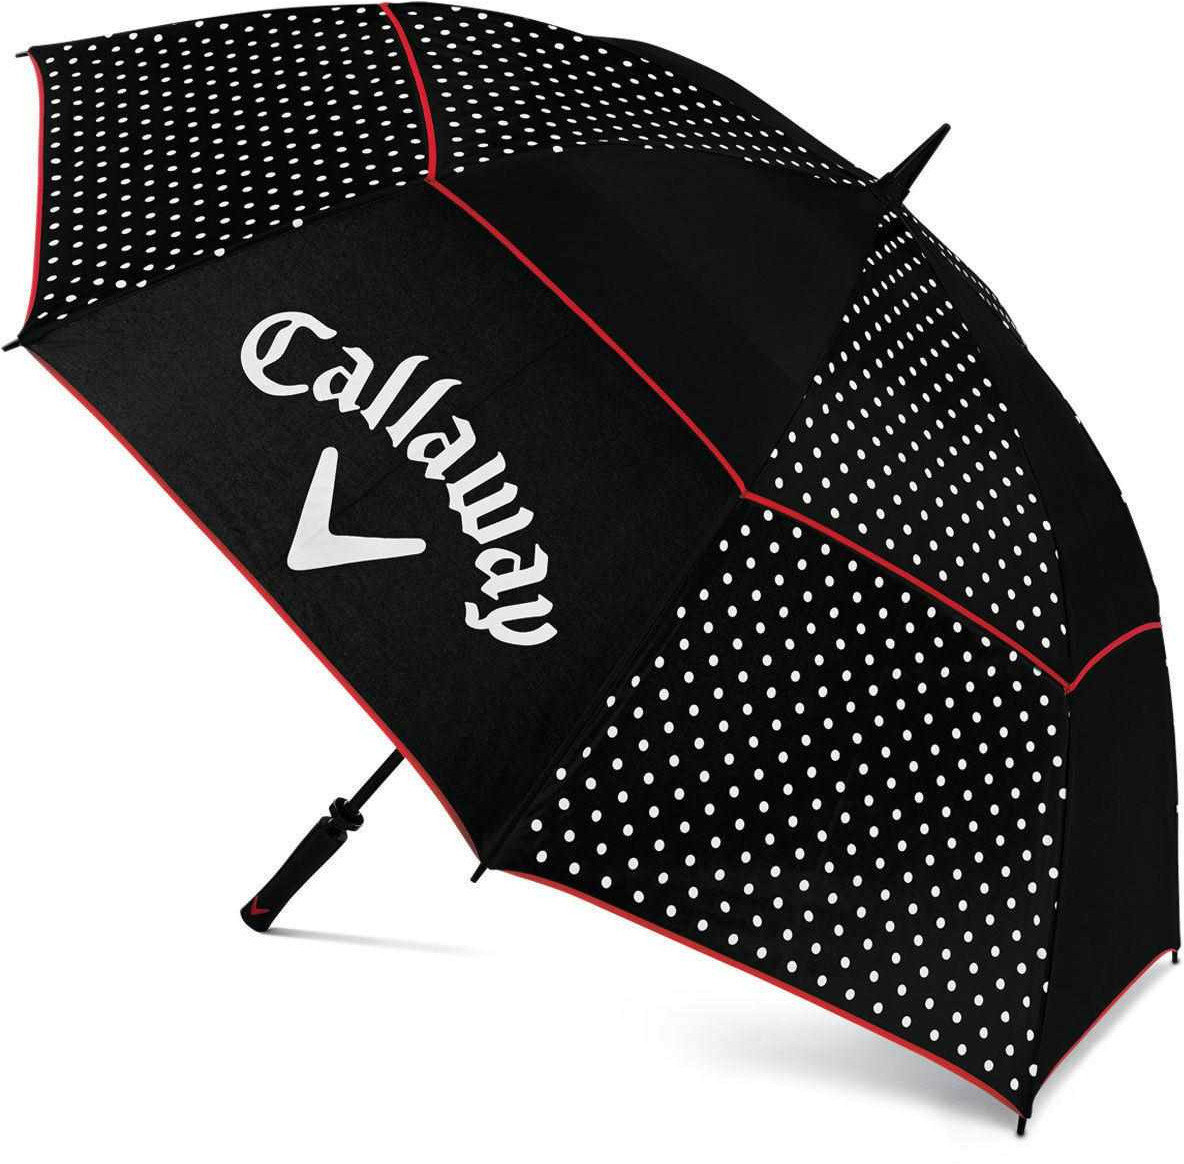 ombrelli Callaway Umbrella Blk/Wht